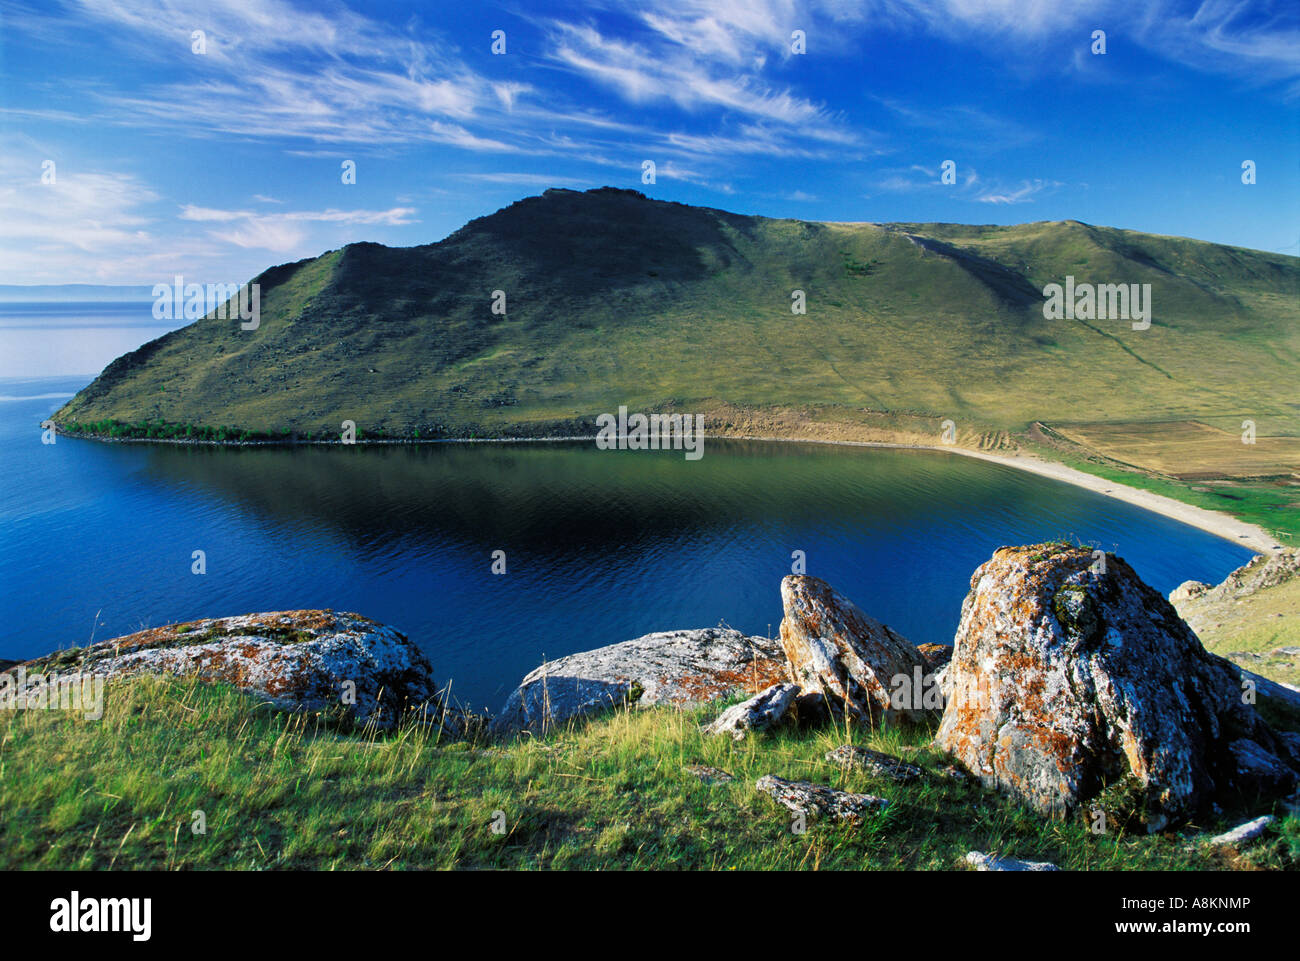 La baie d'Aya, le lac Baïkal, Sibérie, Russie Banque D'Images